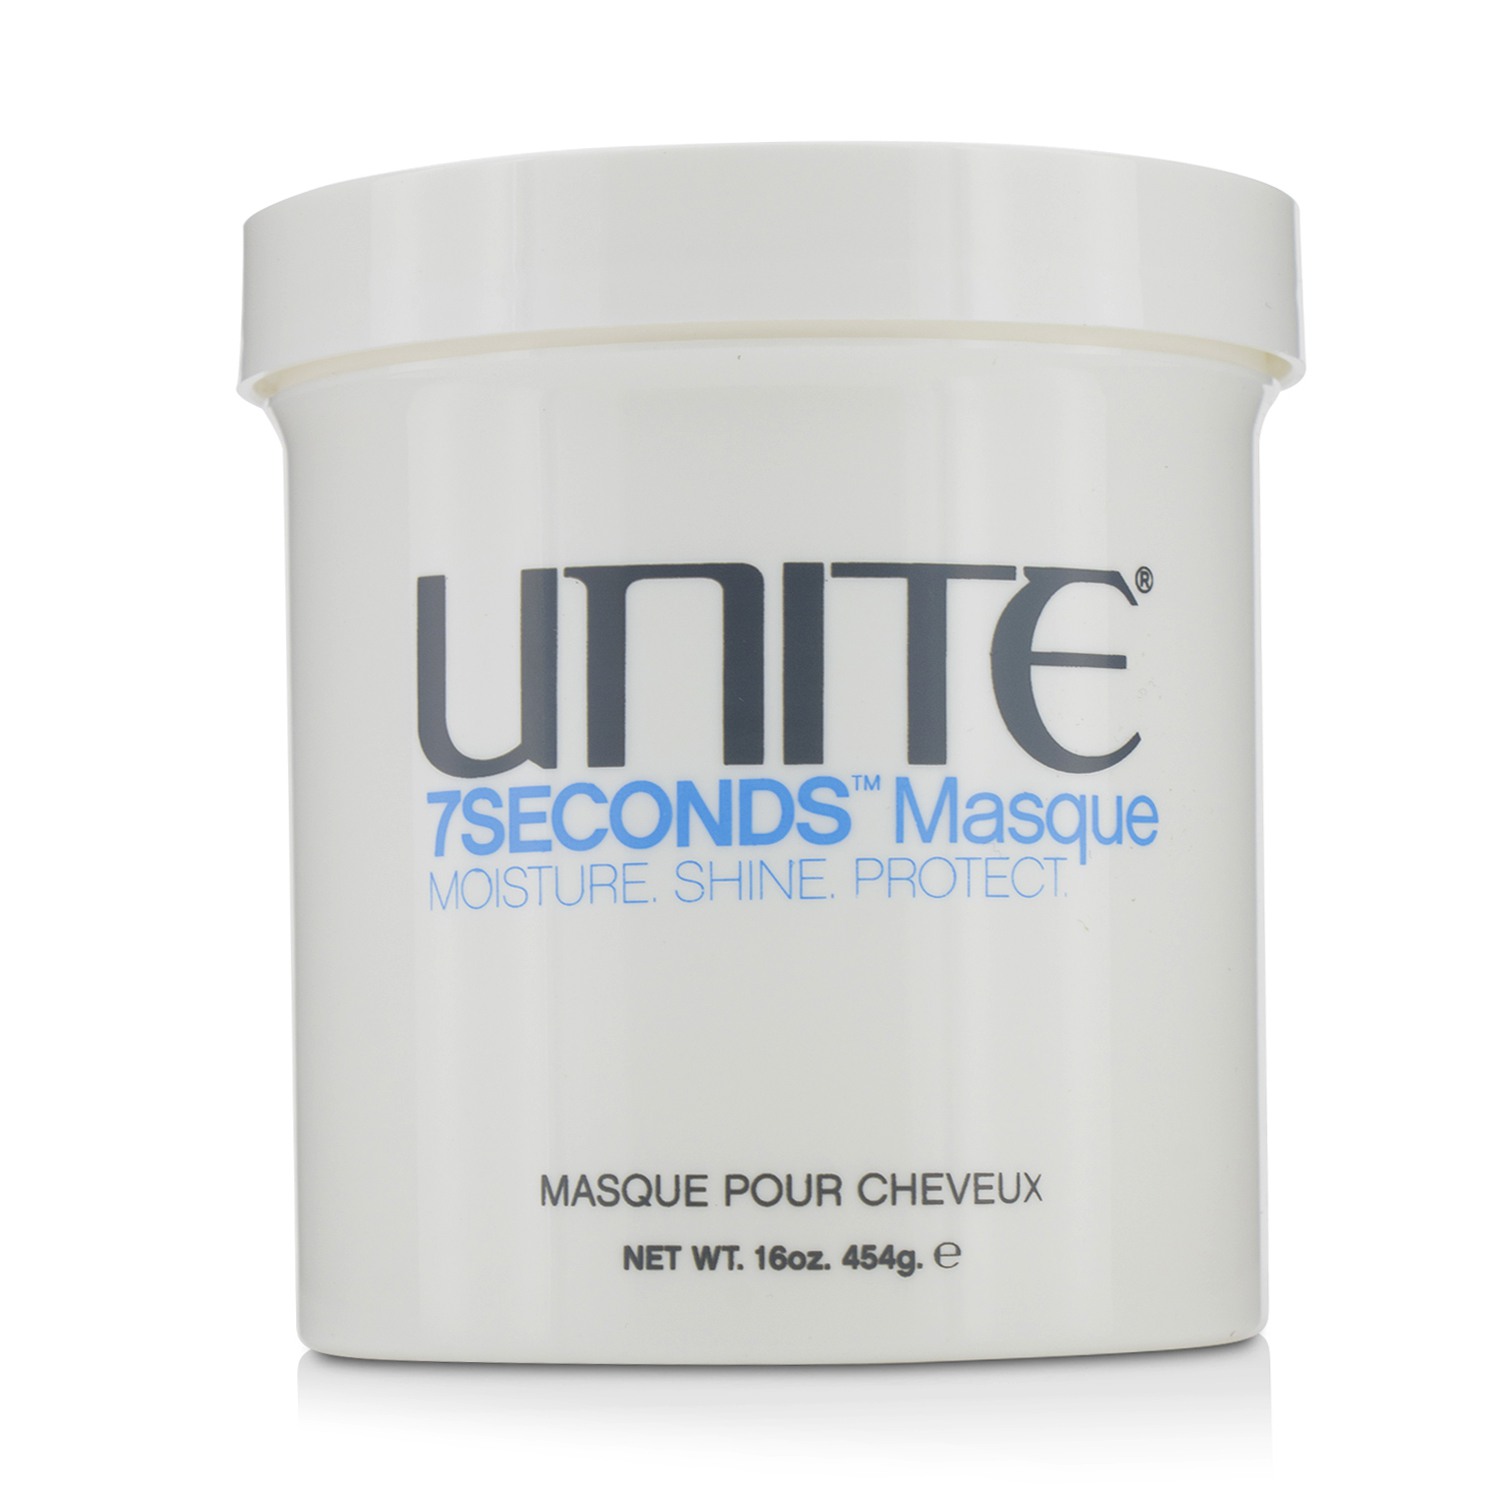 7Seconds Masque (Moisture Shine Protect) Unite Image